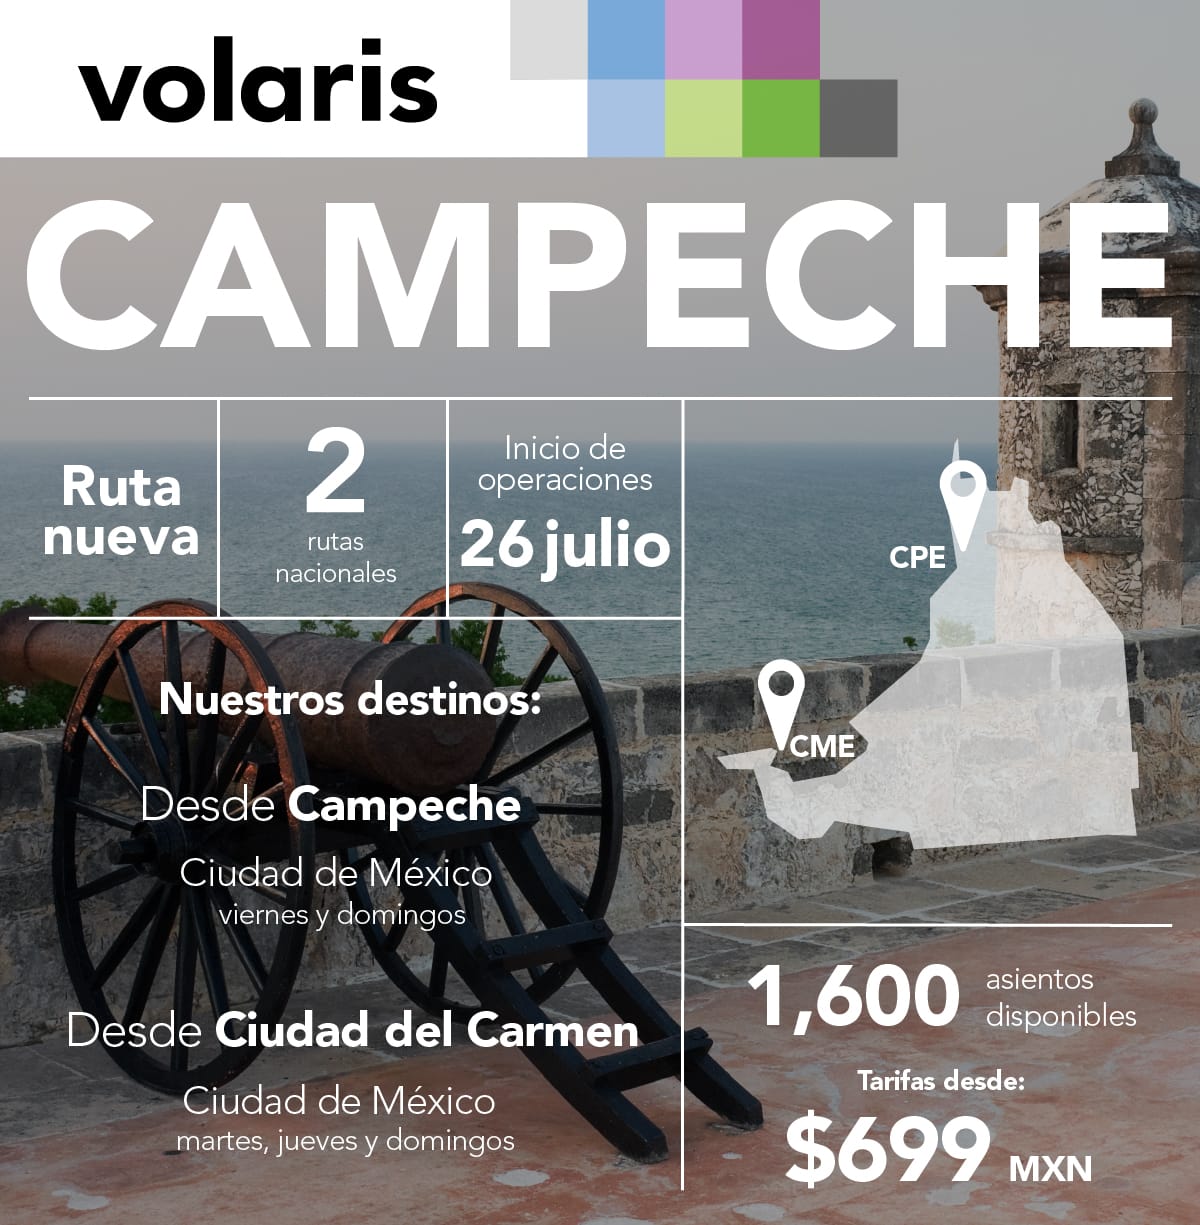 Volaris Campeche